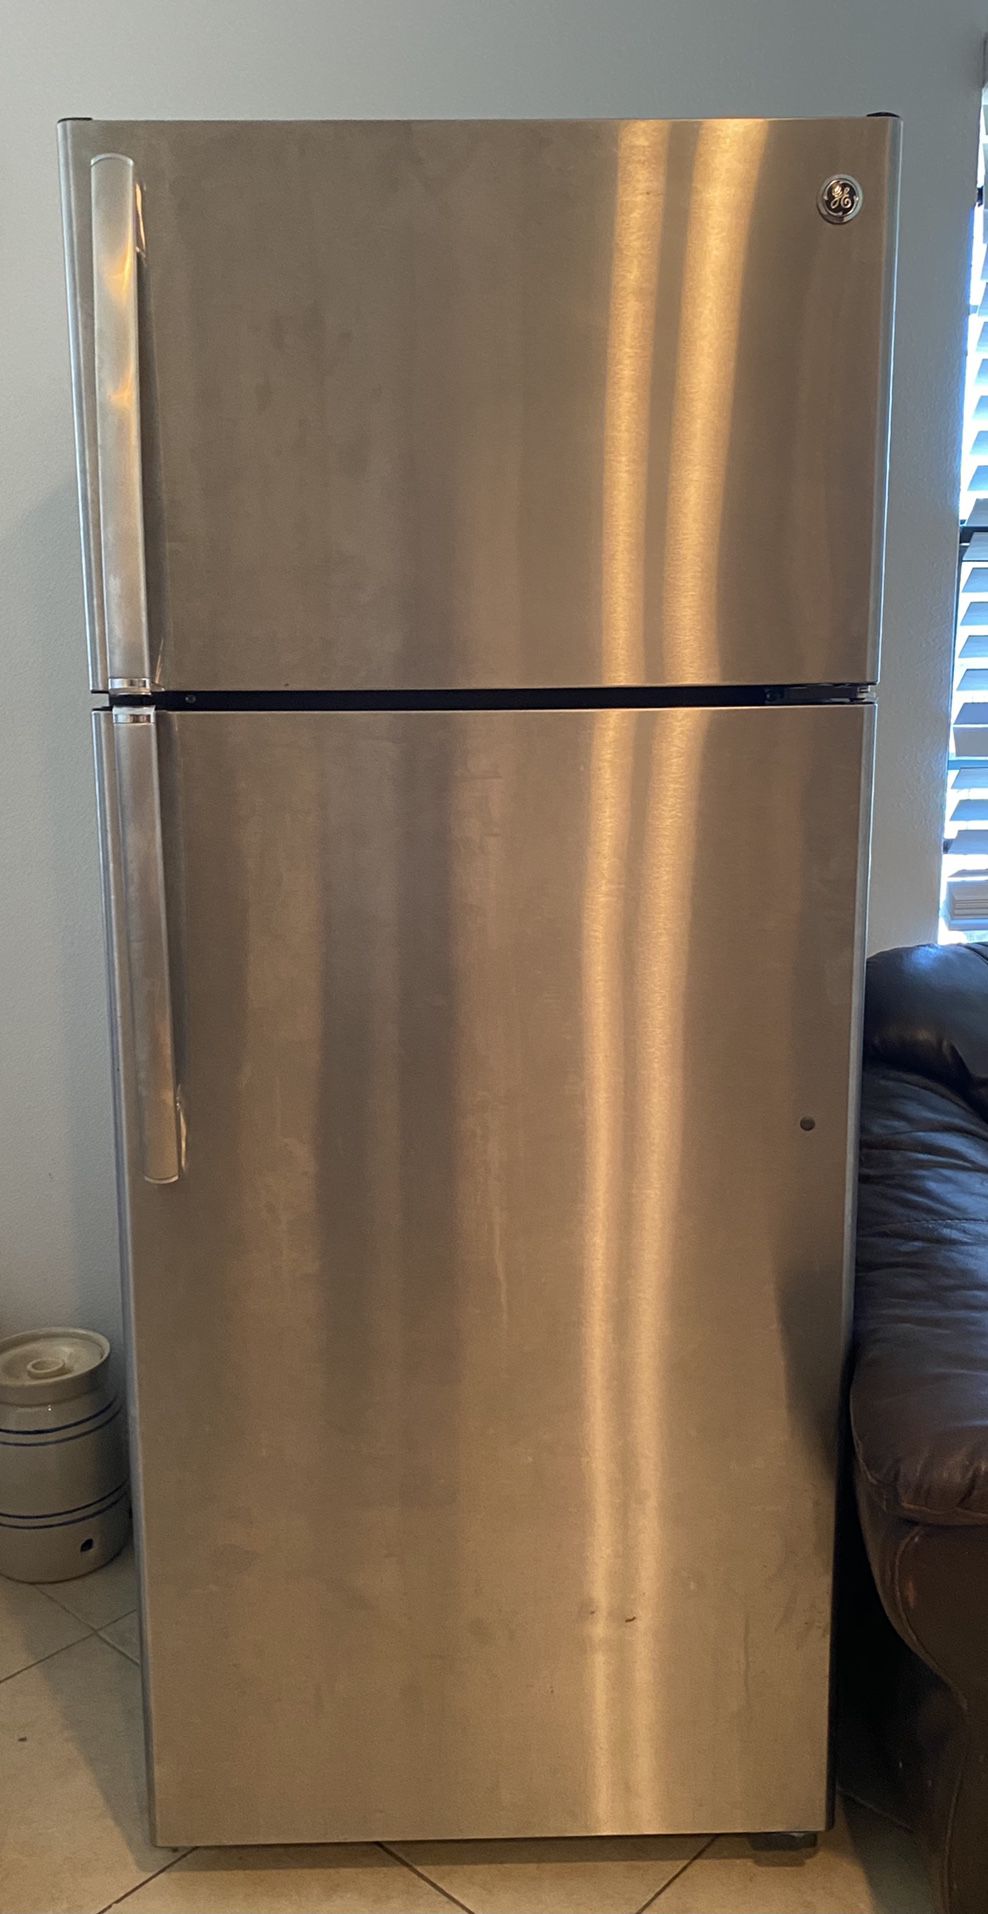 Refrigeradora GE